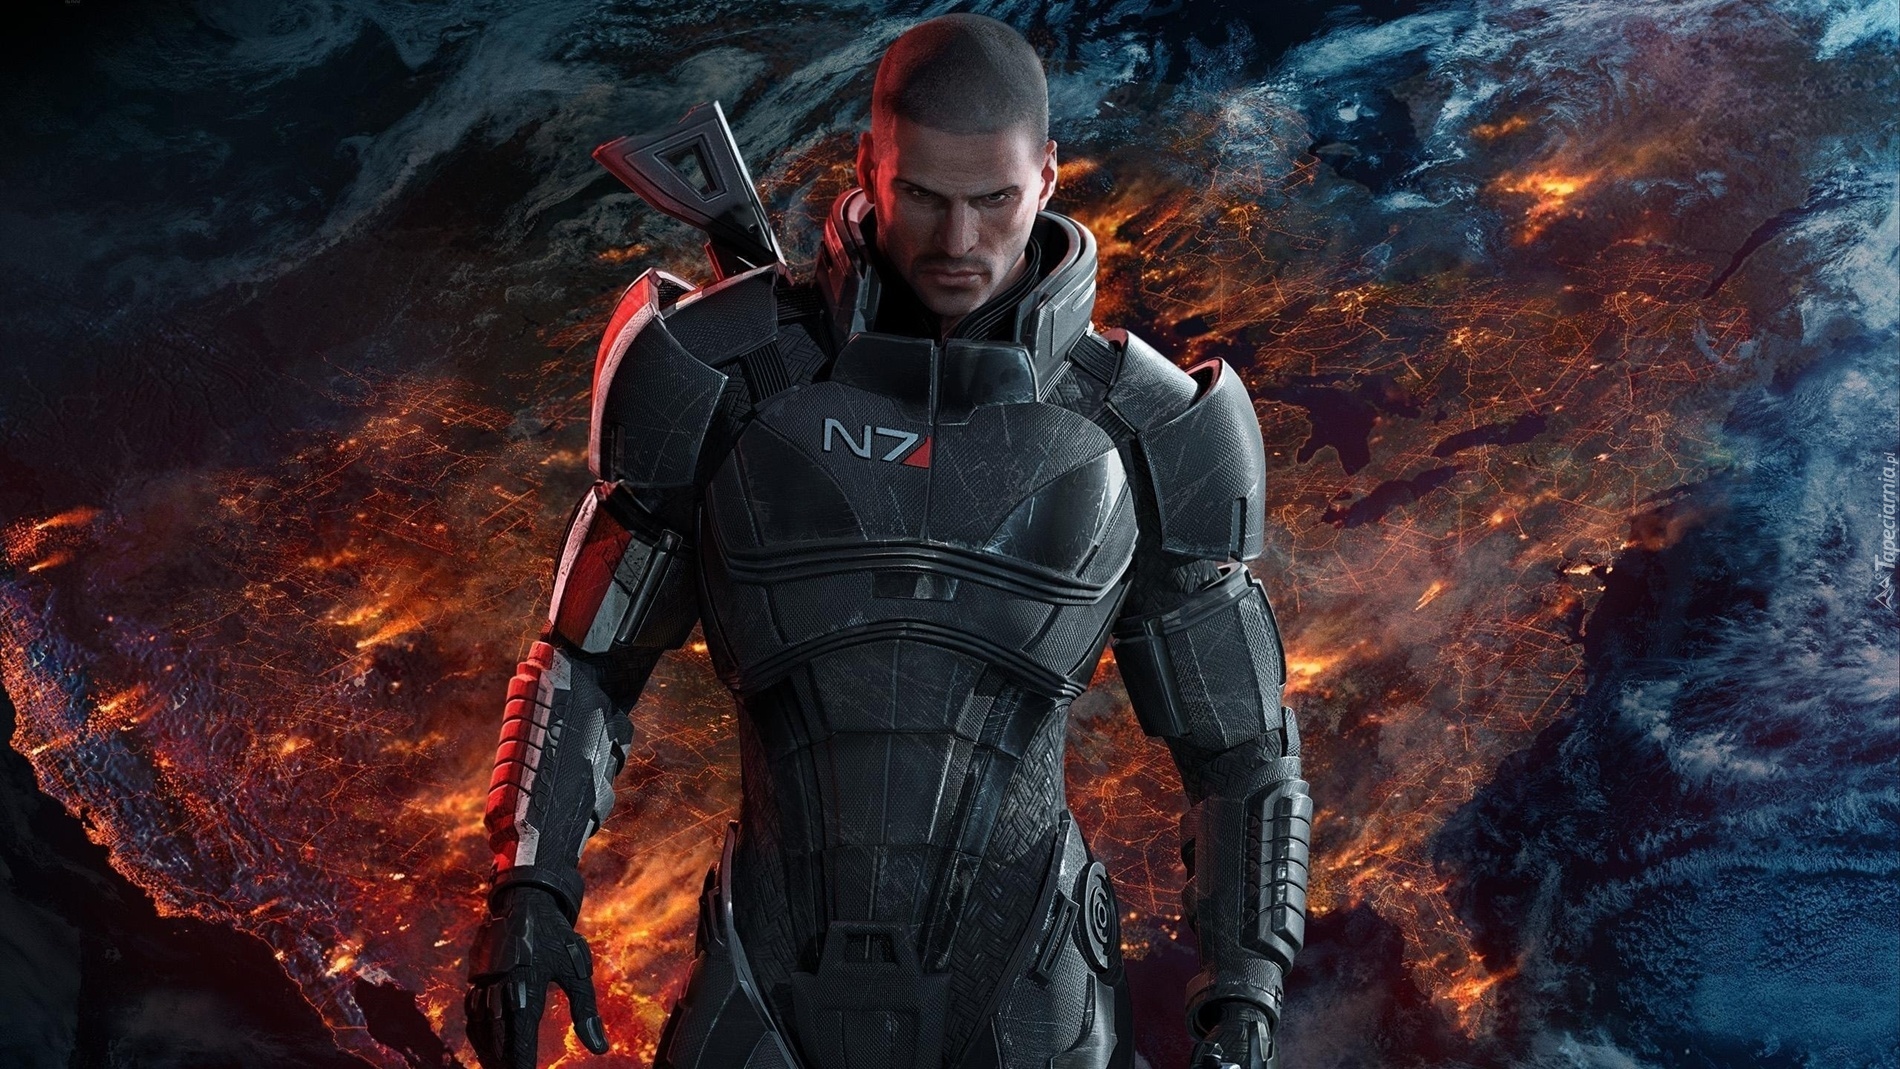 Mass Effect 3, Shepard